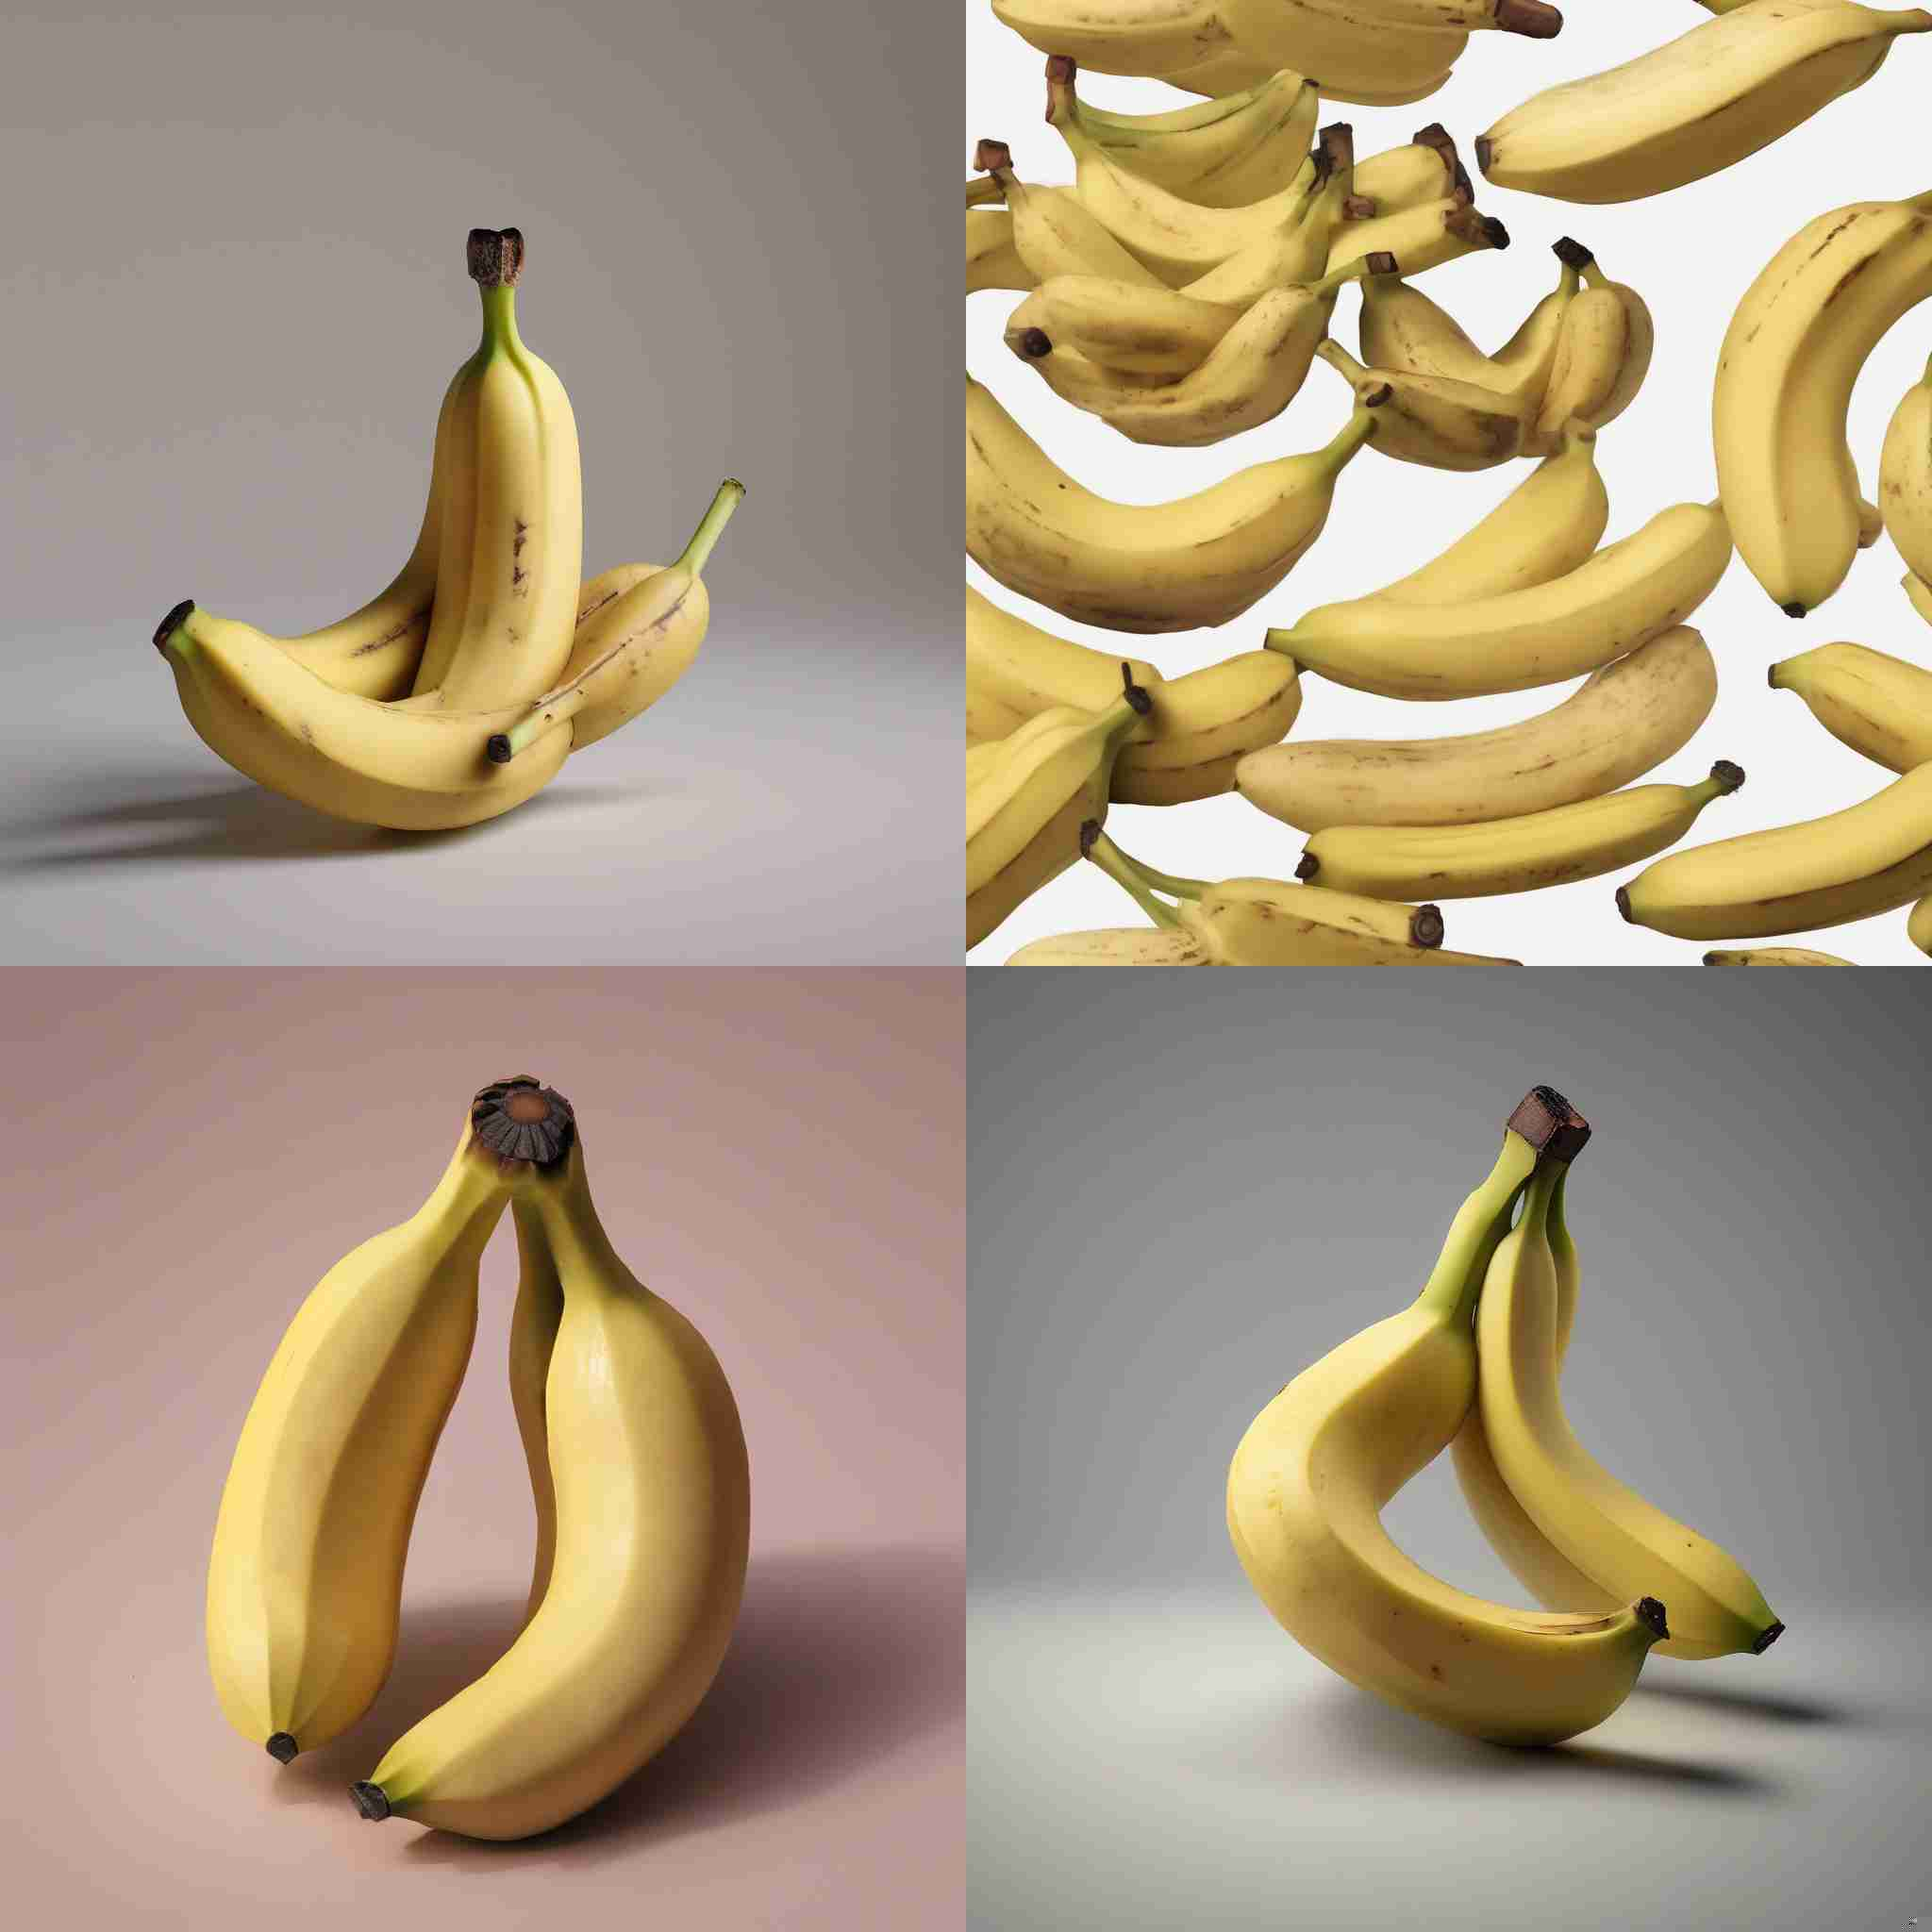 A premature banana